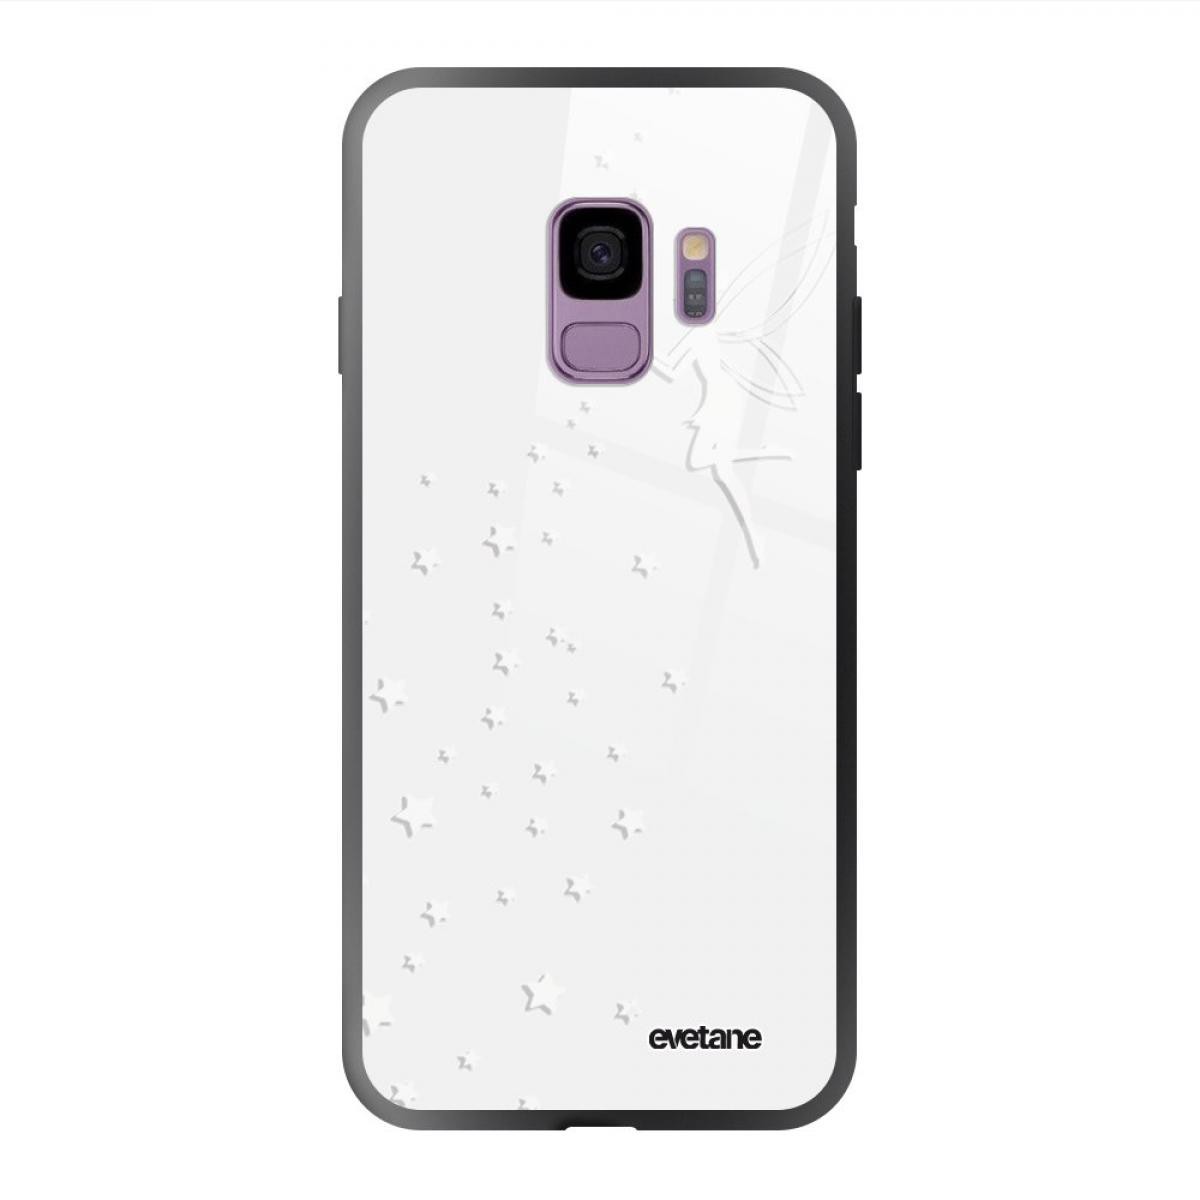 Evetane - Coque Galaxy S9 soft touch noir effet glossy Fée Blanche Design Evetane - Coque, étui smartphone